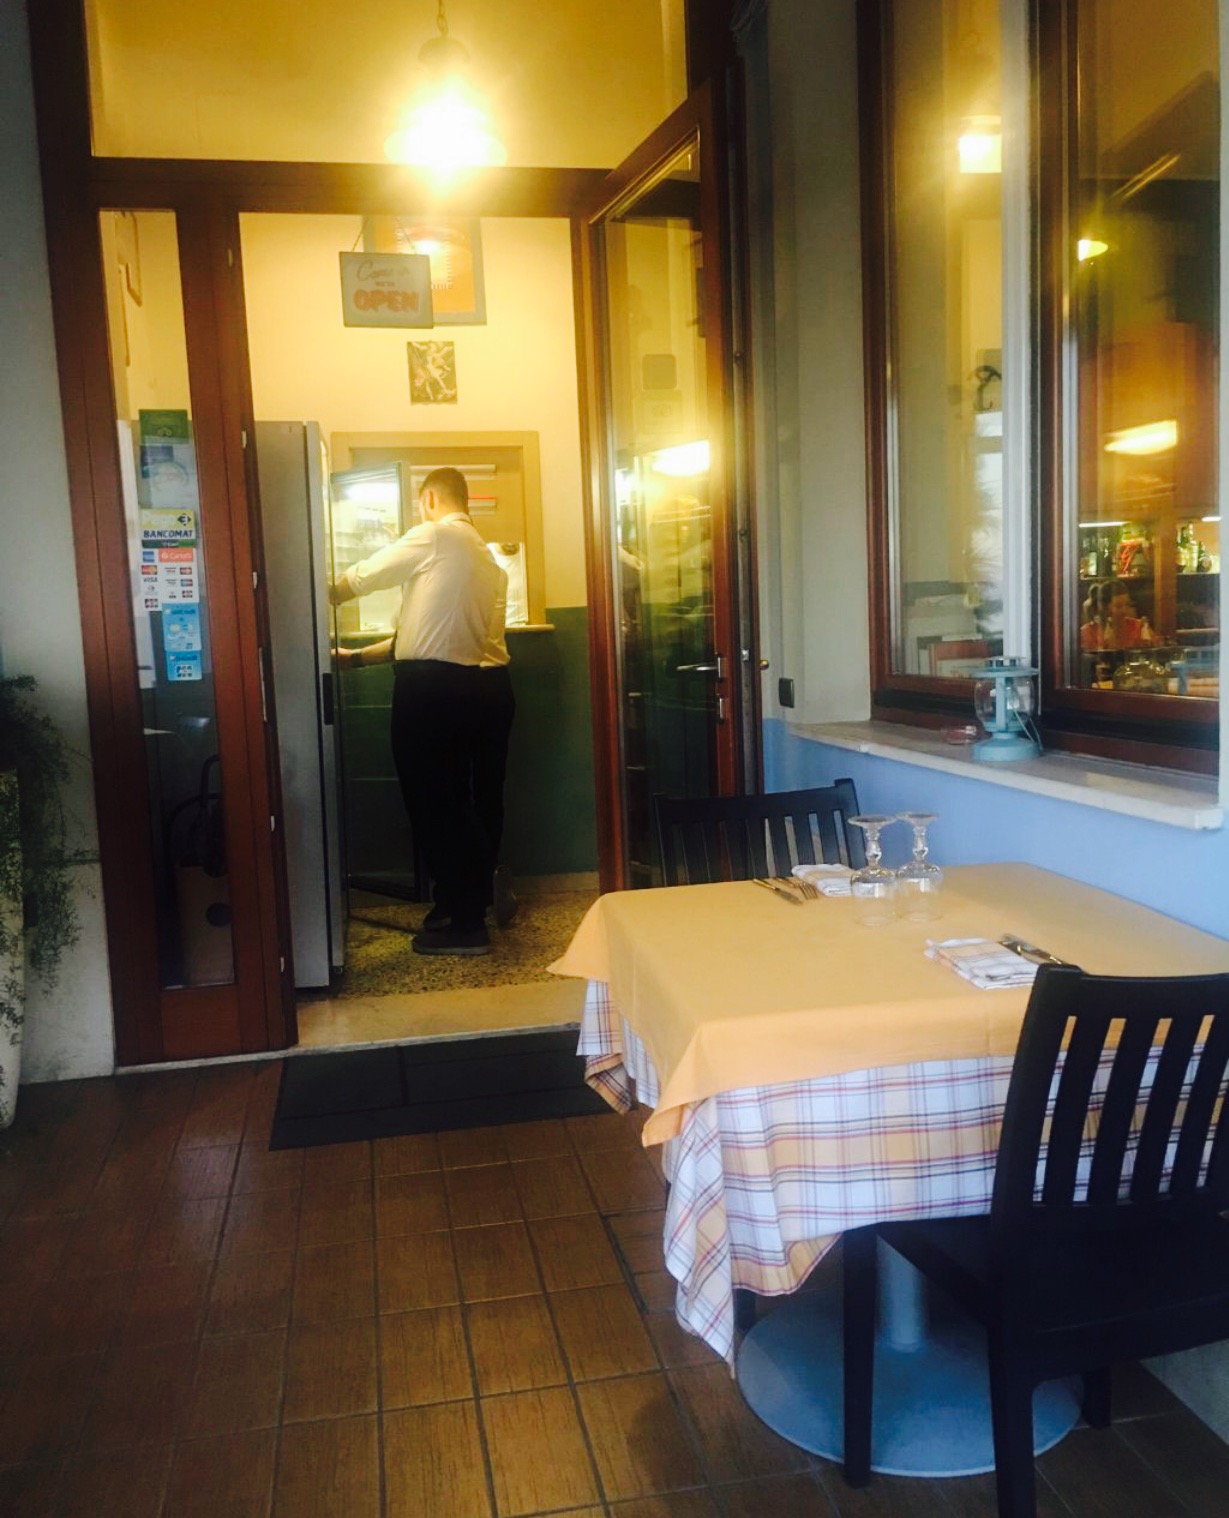 LE FRIT C'EST CHIC, San Vito Chietino - Restaurant Reviews, Photos